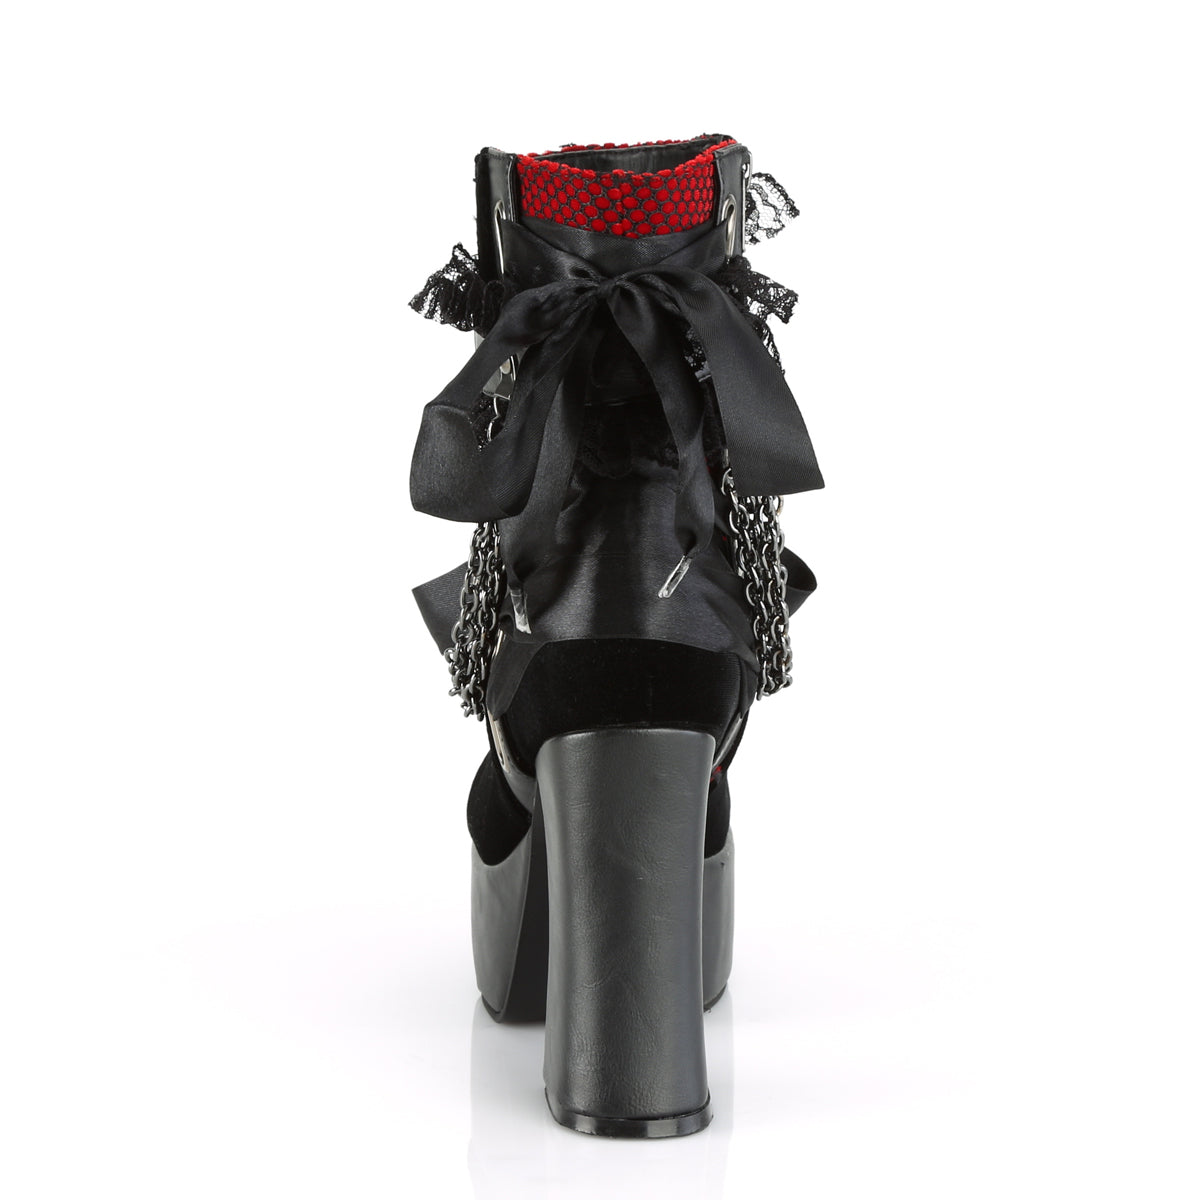 CHARADE-110 Demonia Black V Le-Red-Black Velvet-Fishnet Overlay Women's Ankle Boots [Demonia Cult Alternative Footwear]